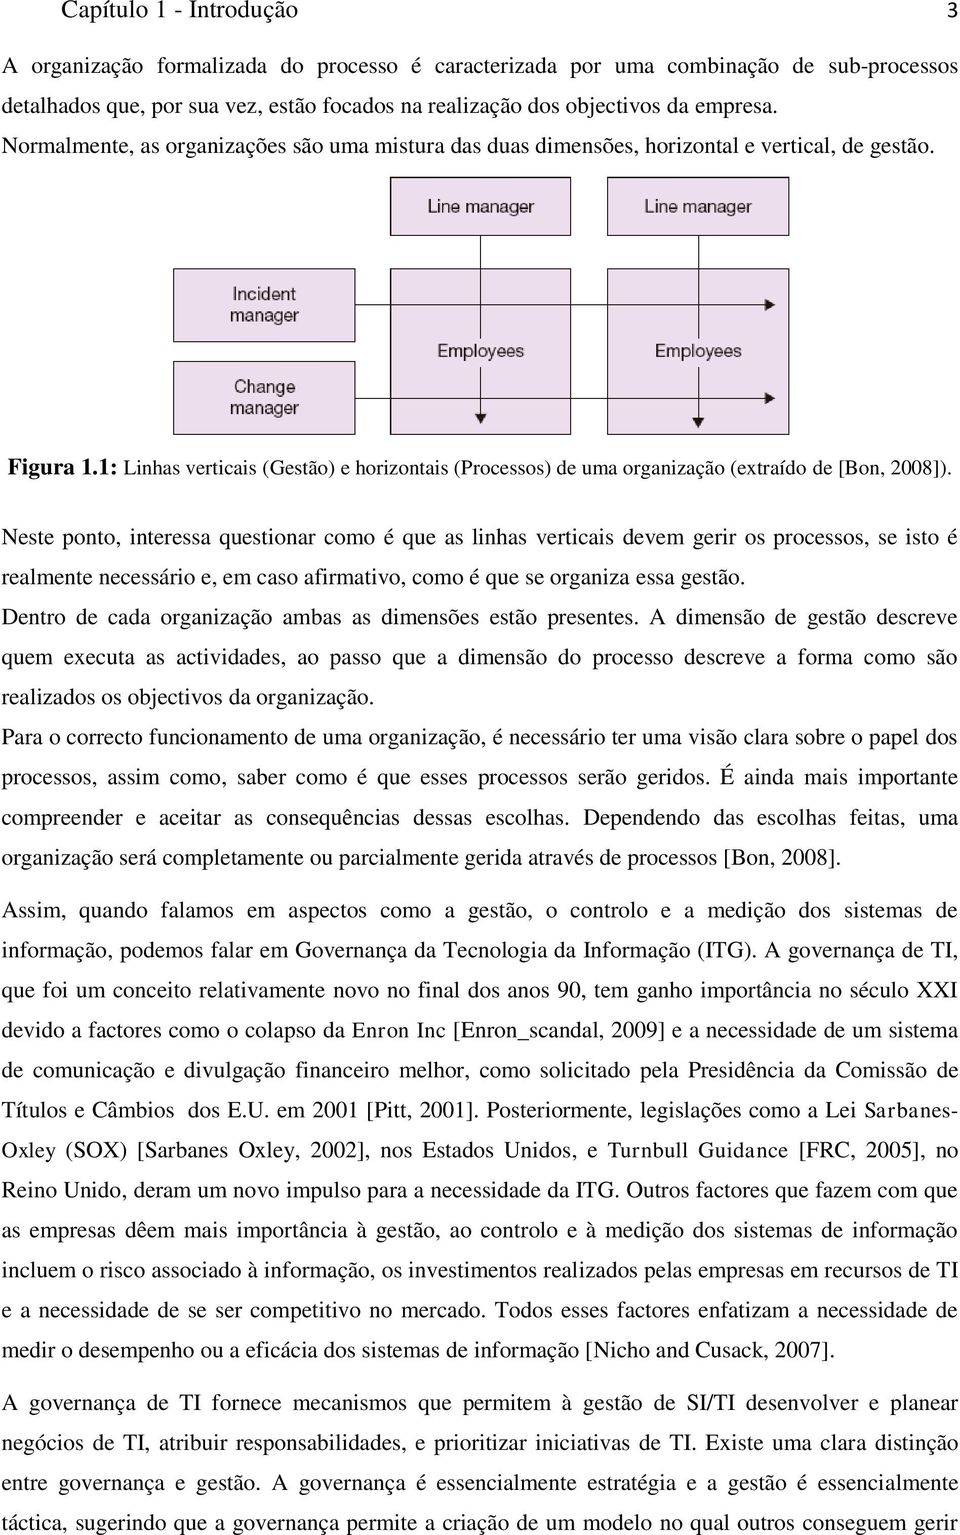 1: Linhas verticais (Gestão) e horizontais (Processos) de uma organização (extraído de [Bon, 2008]).